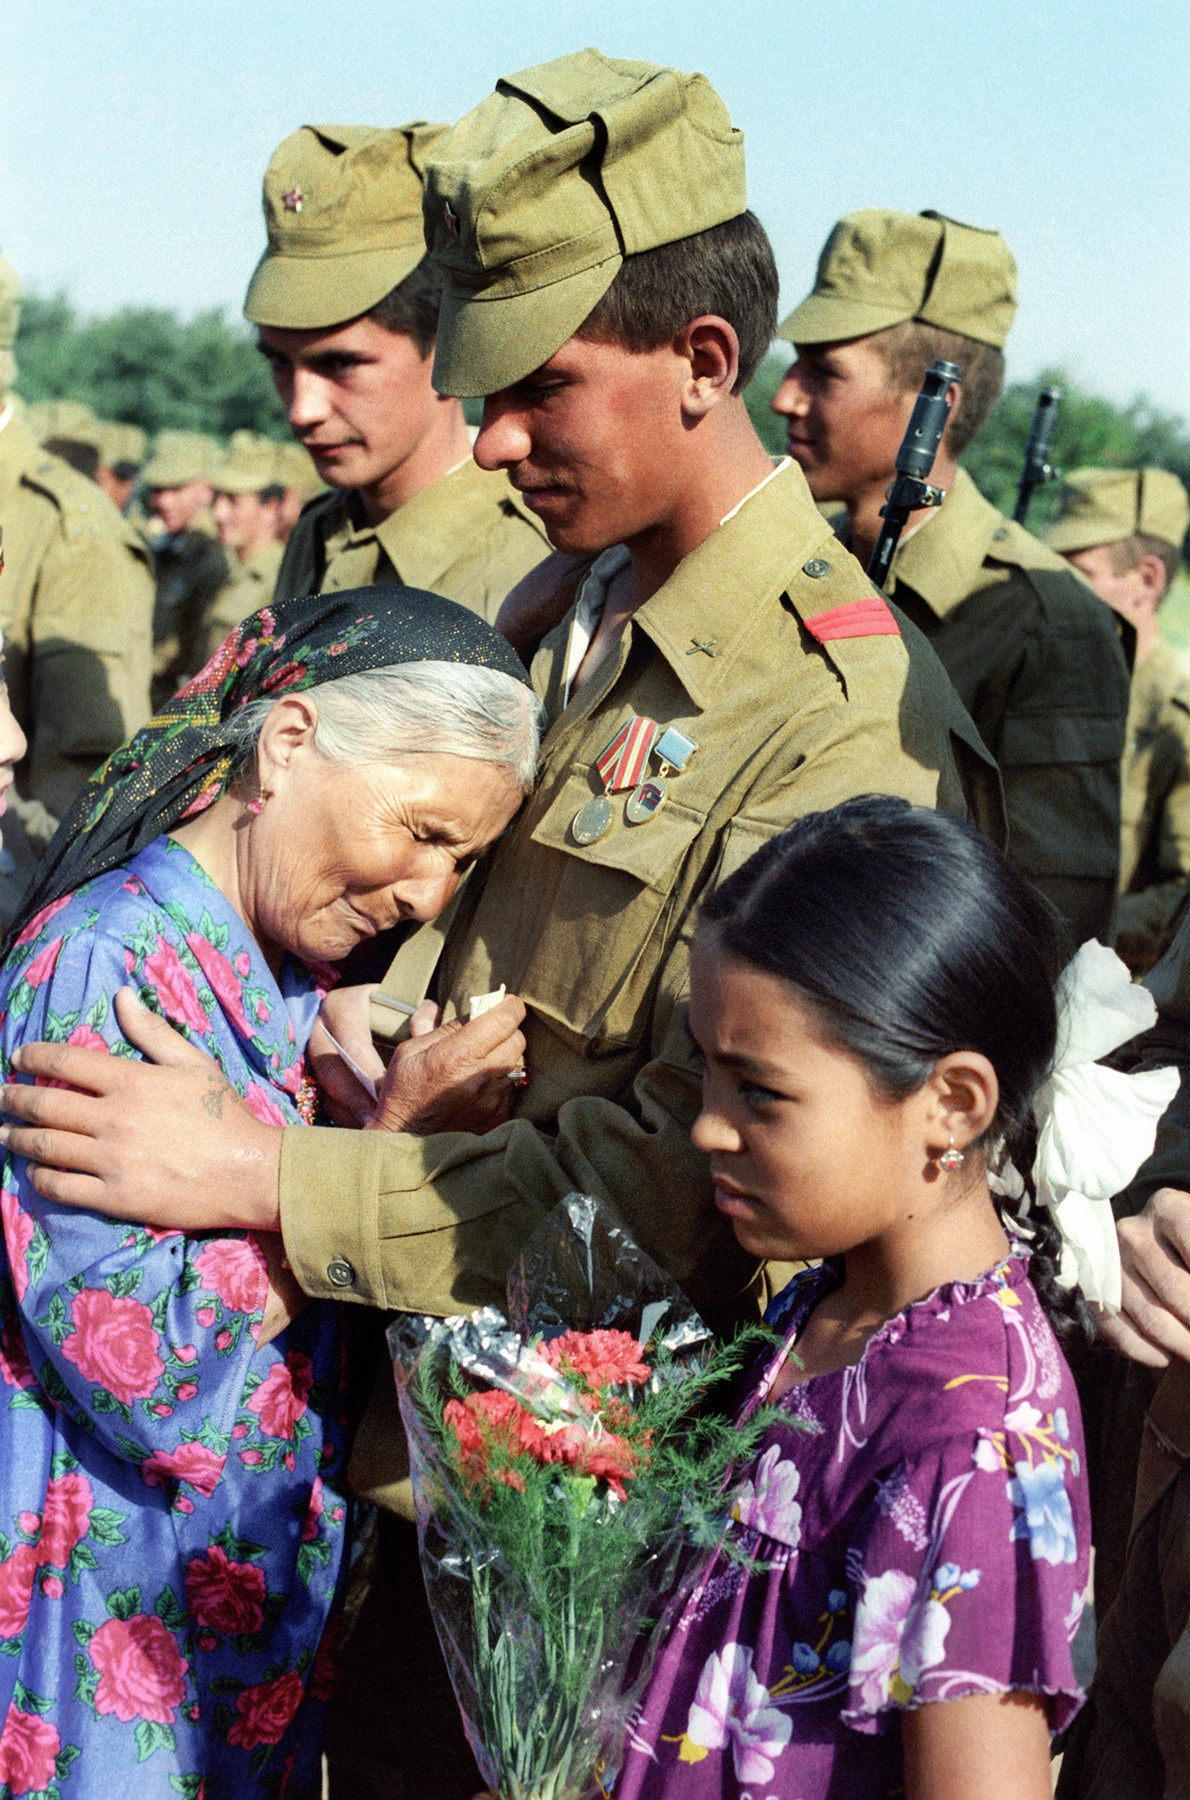 Област Сухандарја, Узбекистанска советска социјалистичка република, СССР. Старица со солзи ги дочекува советските војници кои се враќаат од Авганистан.